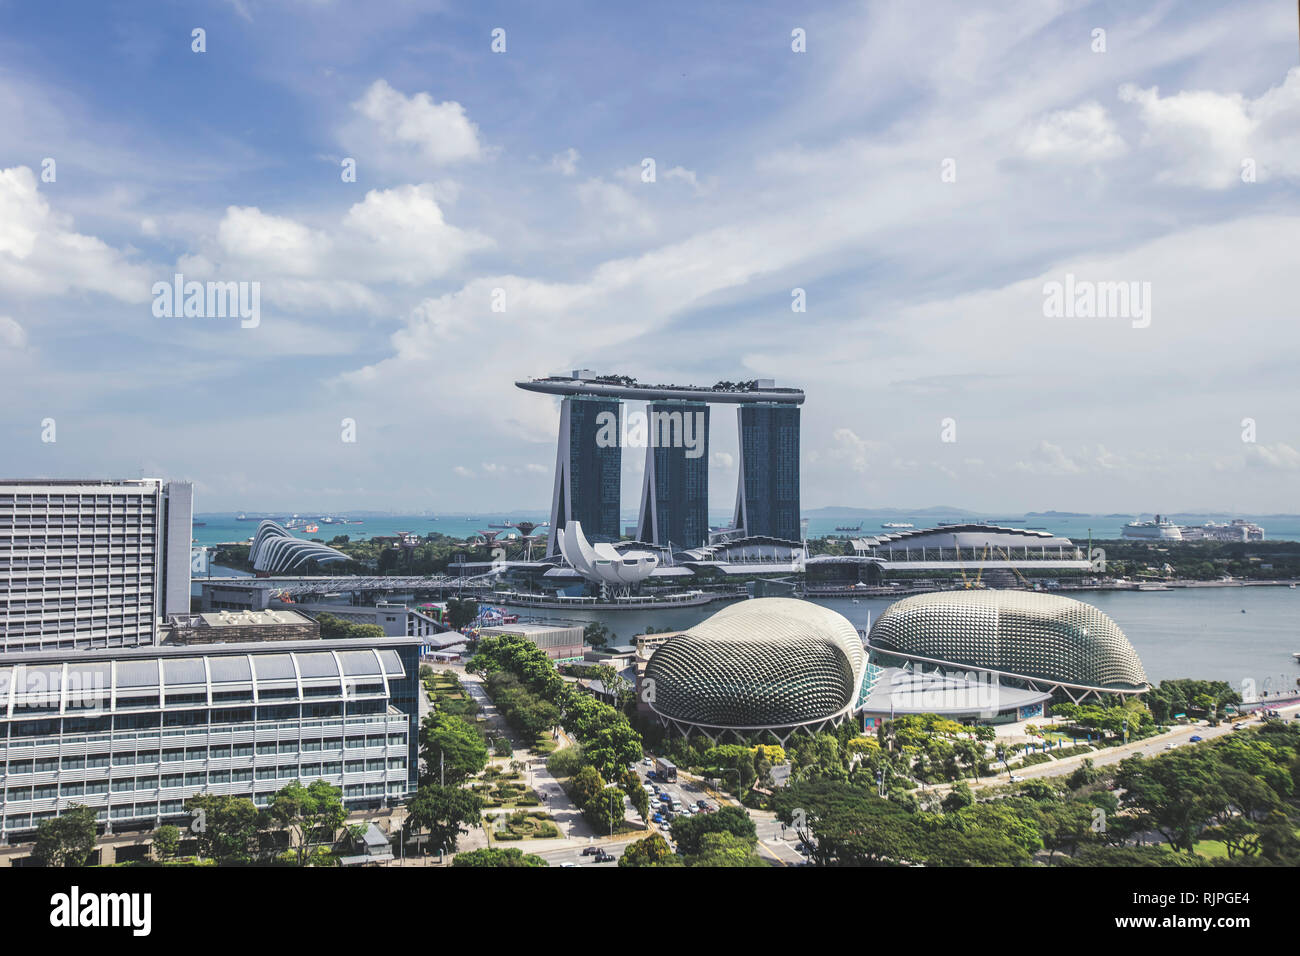 Singapour Marina Bay Sands Hotel et l'Esplanade Theatres on the bay close up détails architecturaux vue aérienne pendant la journée ciel clair Banque D'Images